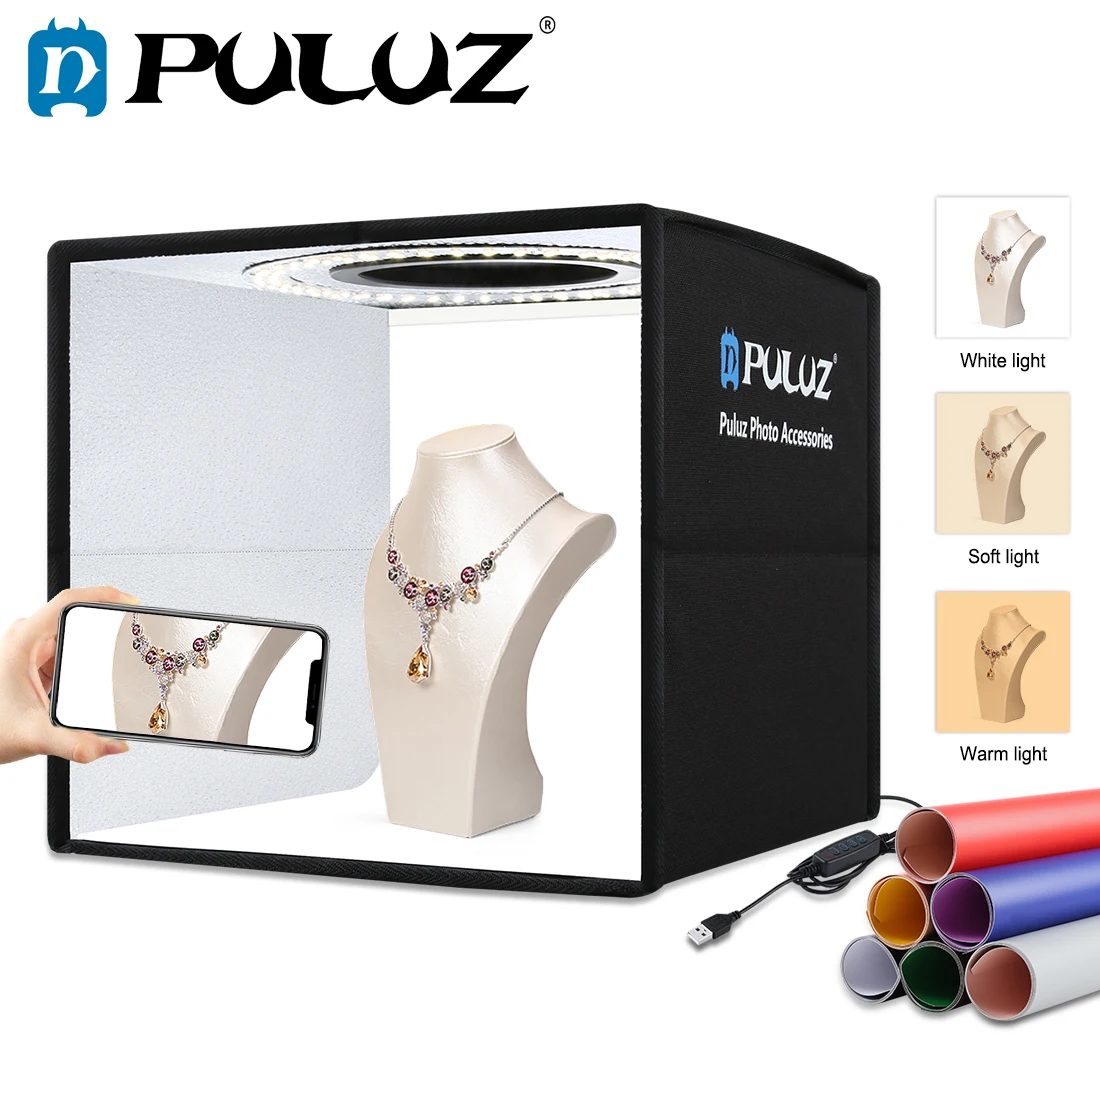 Софтбокс PULUZ с 3 режимами освесветильник световой бокс регулируемой яркостью